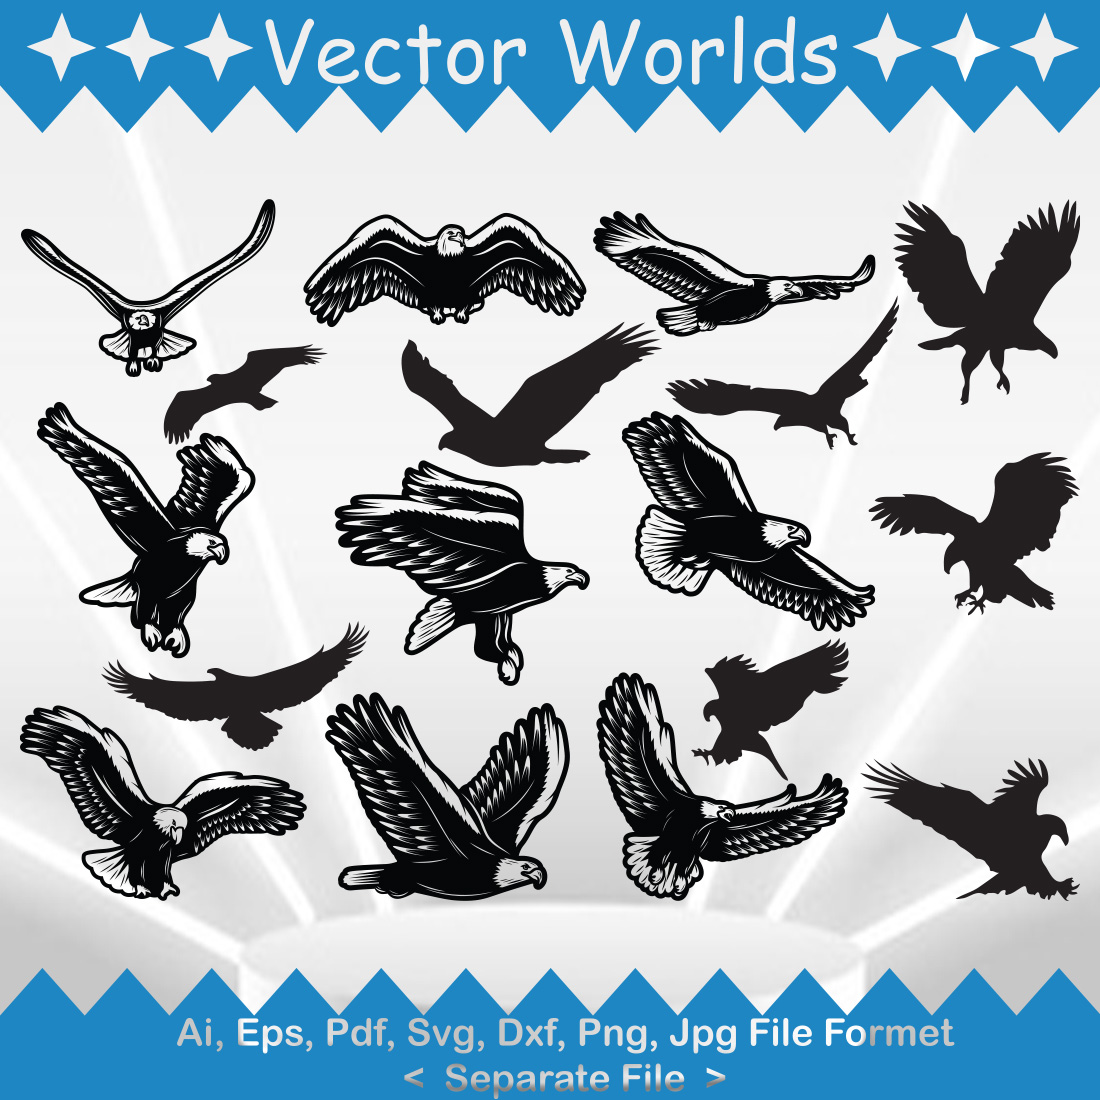 Flying Eagle SVG Vector Design cover image.